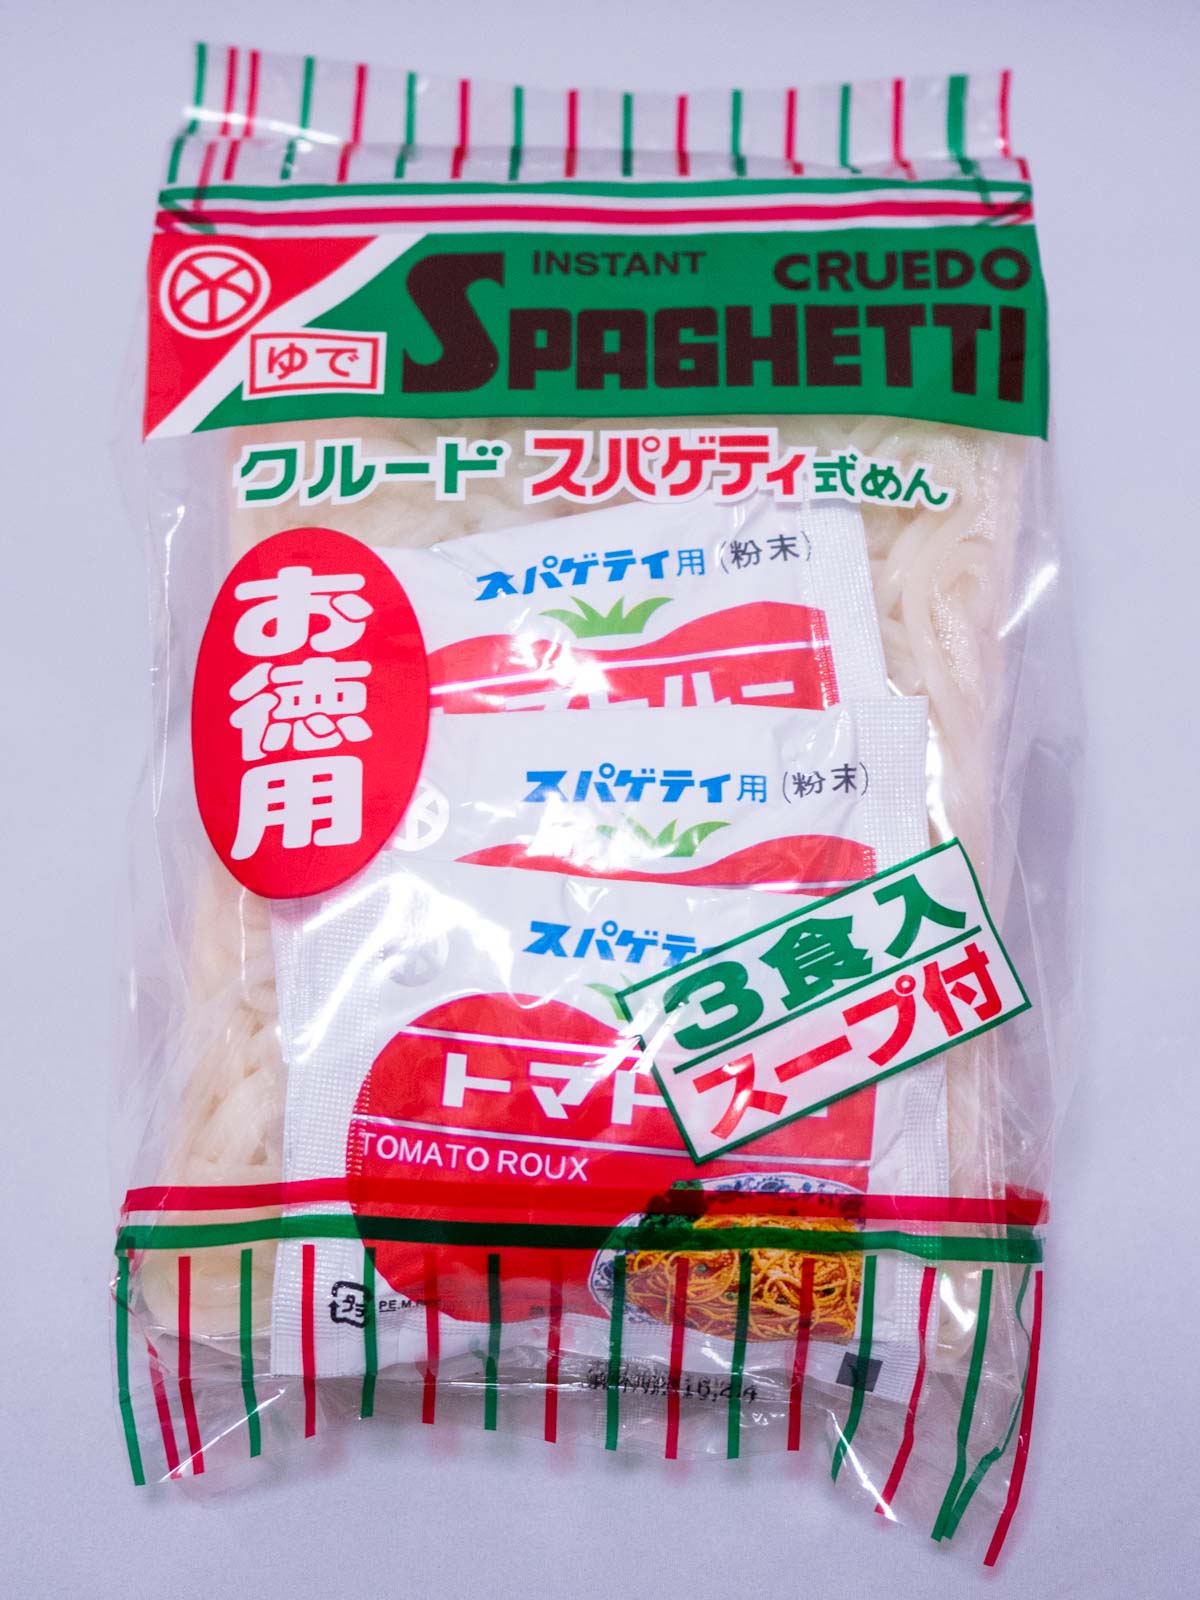 クルードスパゲティ式麺(岡山インスタント麺)